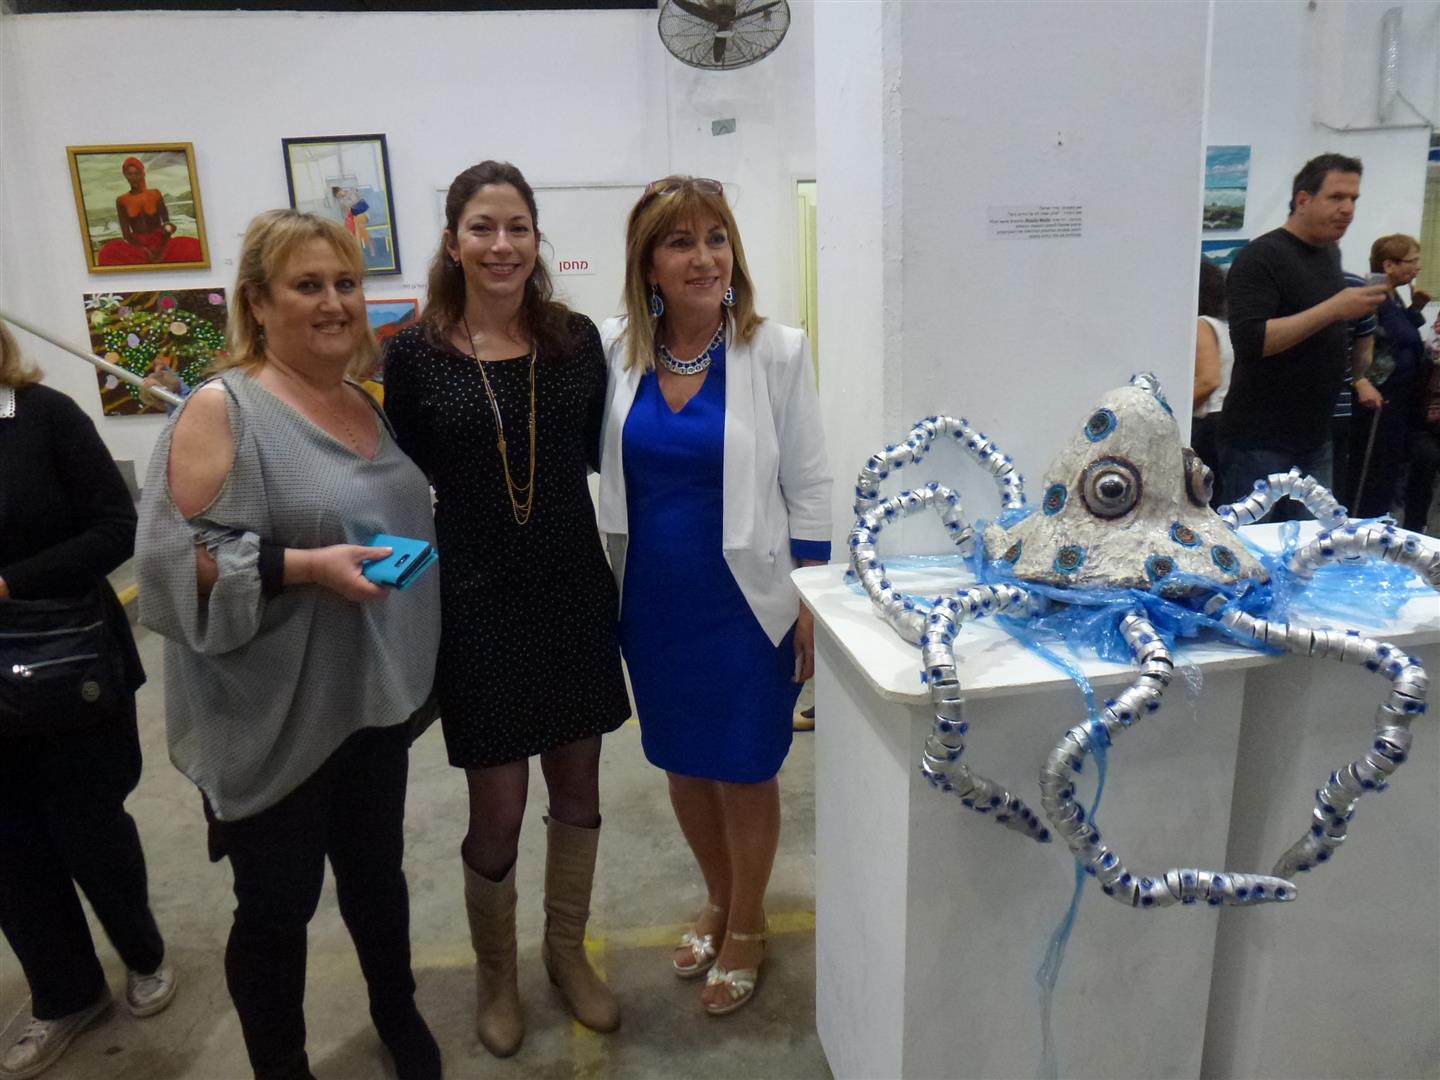 עם ליטלי ורחלי באירוע הפתיחה לתערוכה האקטיבית במרכז עמיעד ביפו